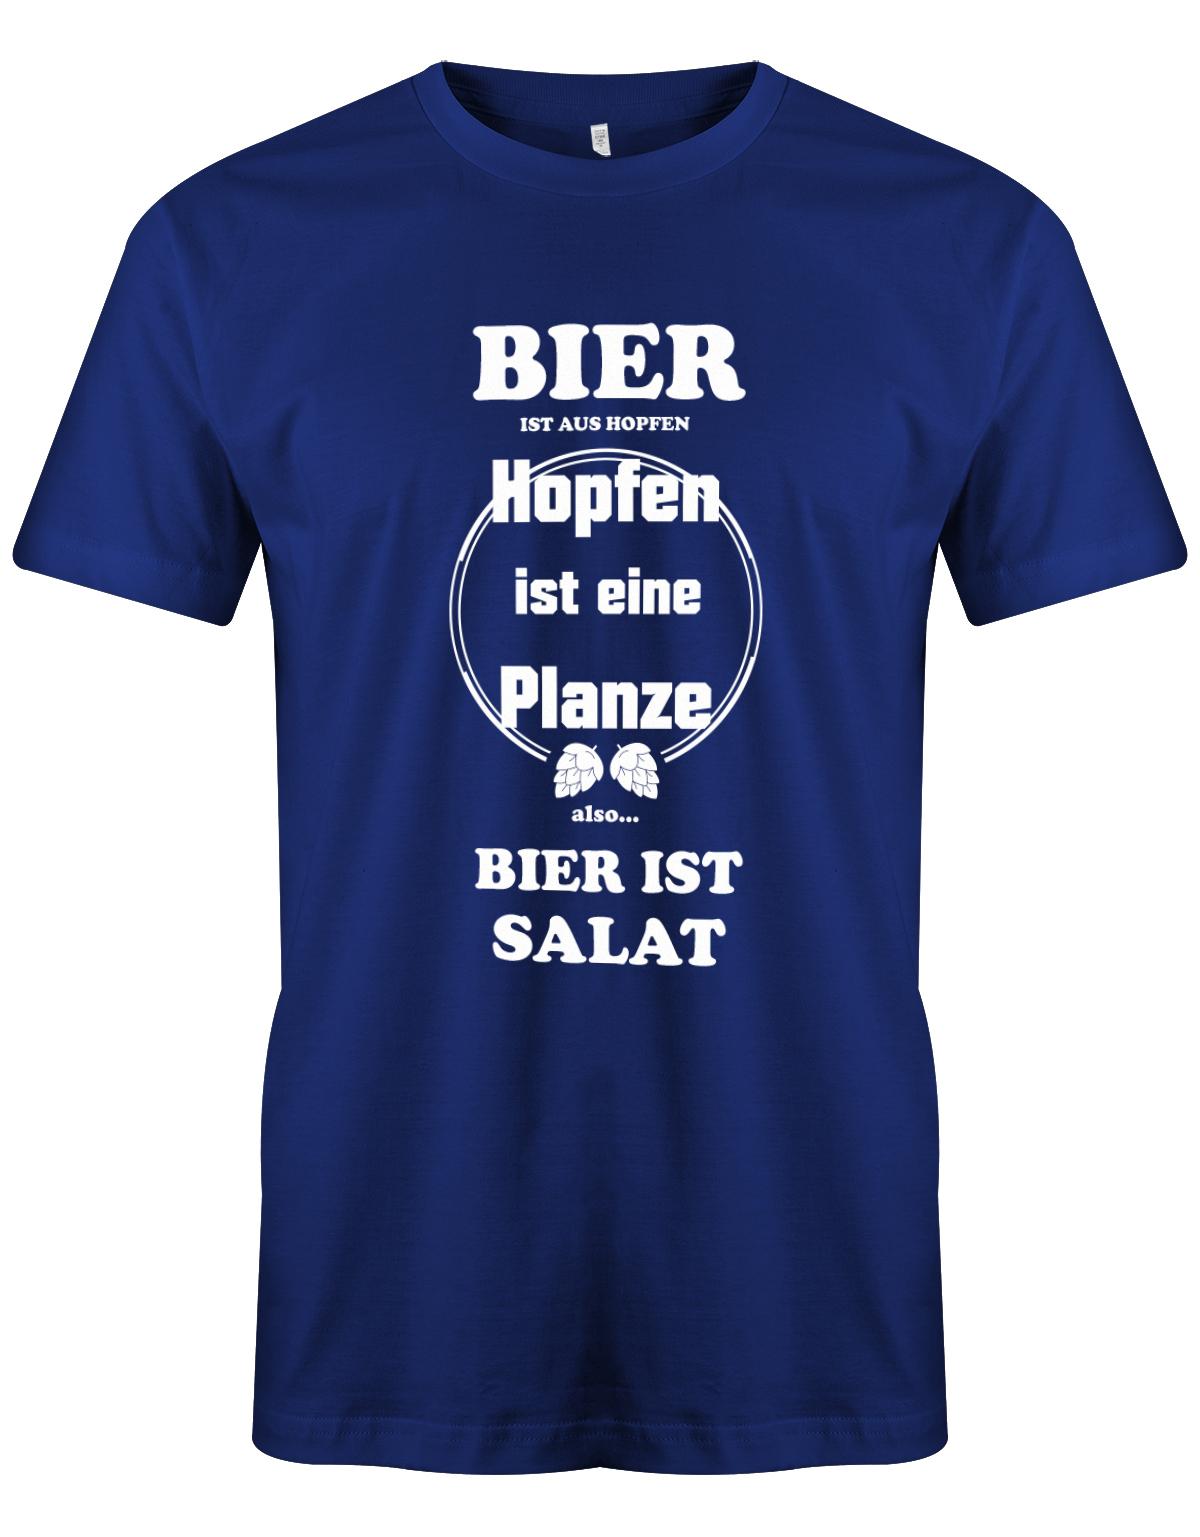 Bier-ist-aus-Hopfen-Hopfen-ist-eine-Pflanze-Bier-ist-Salat-herren-Shirt-Royalblau